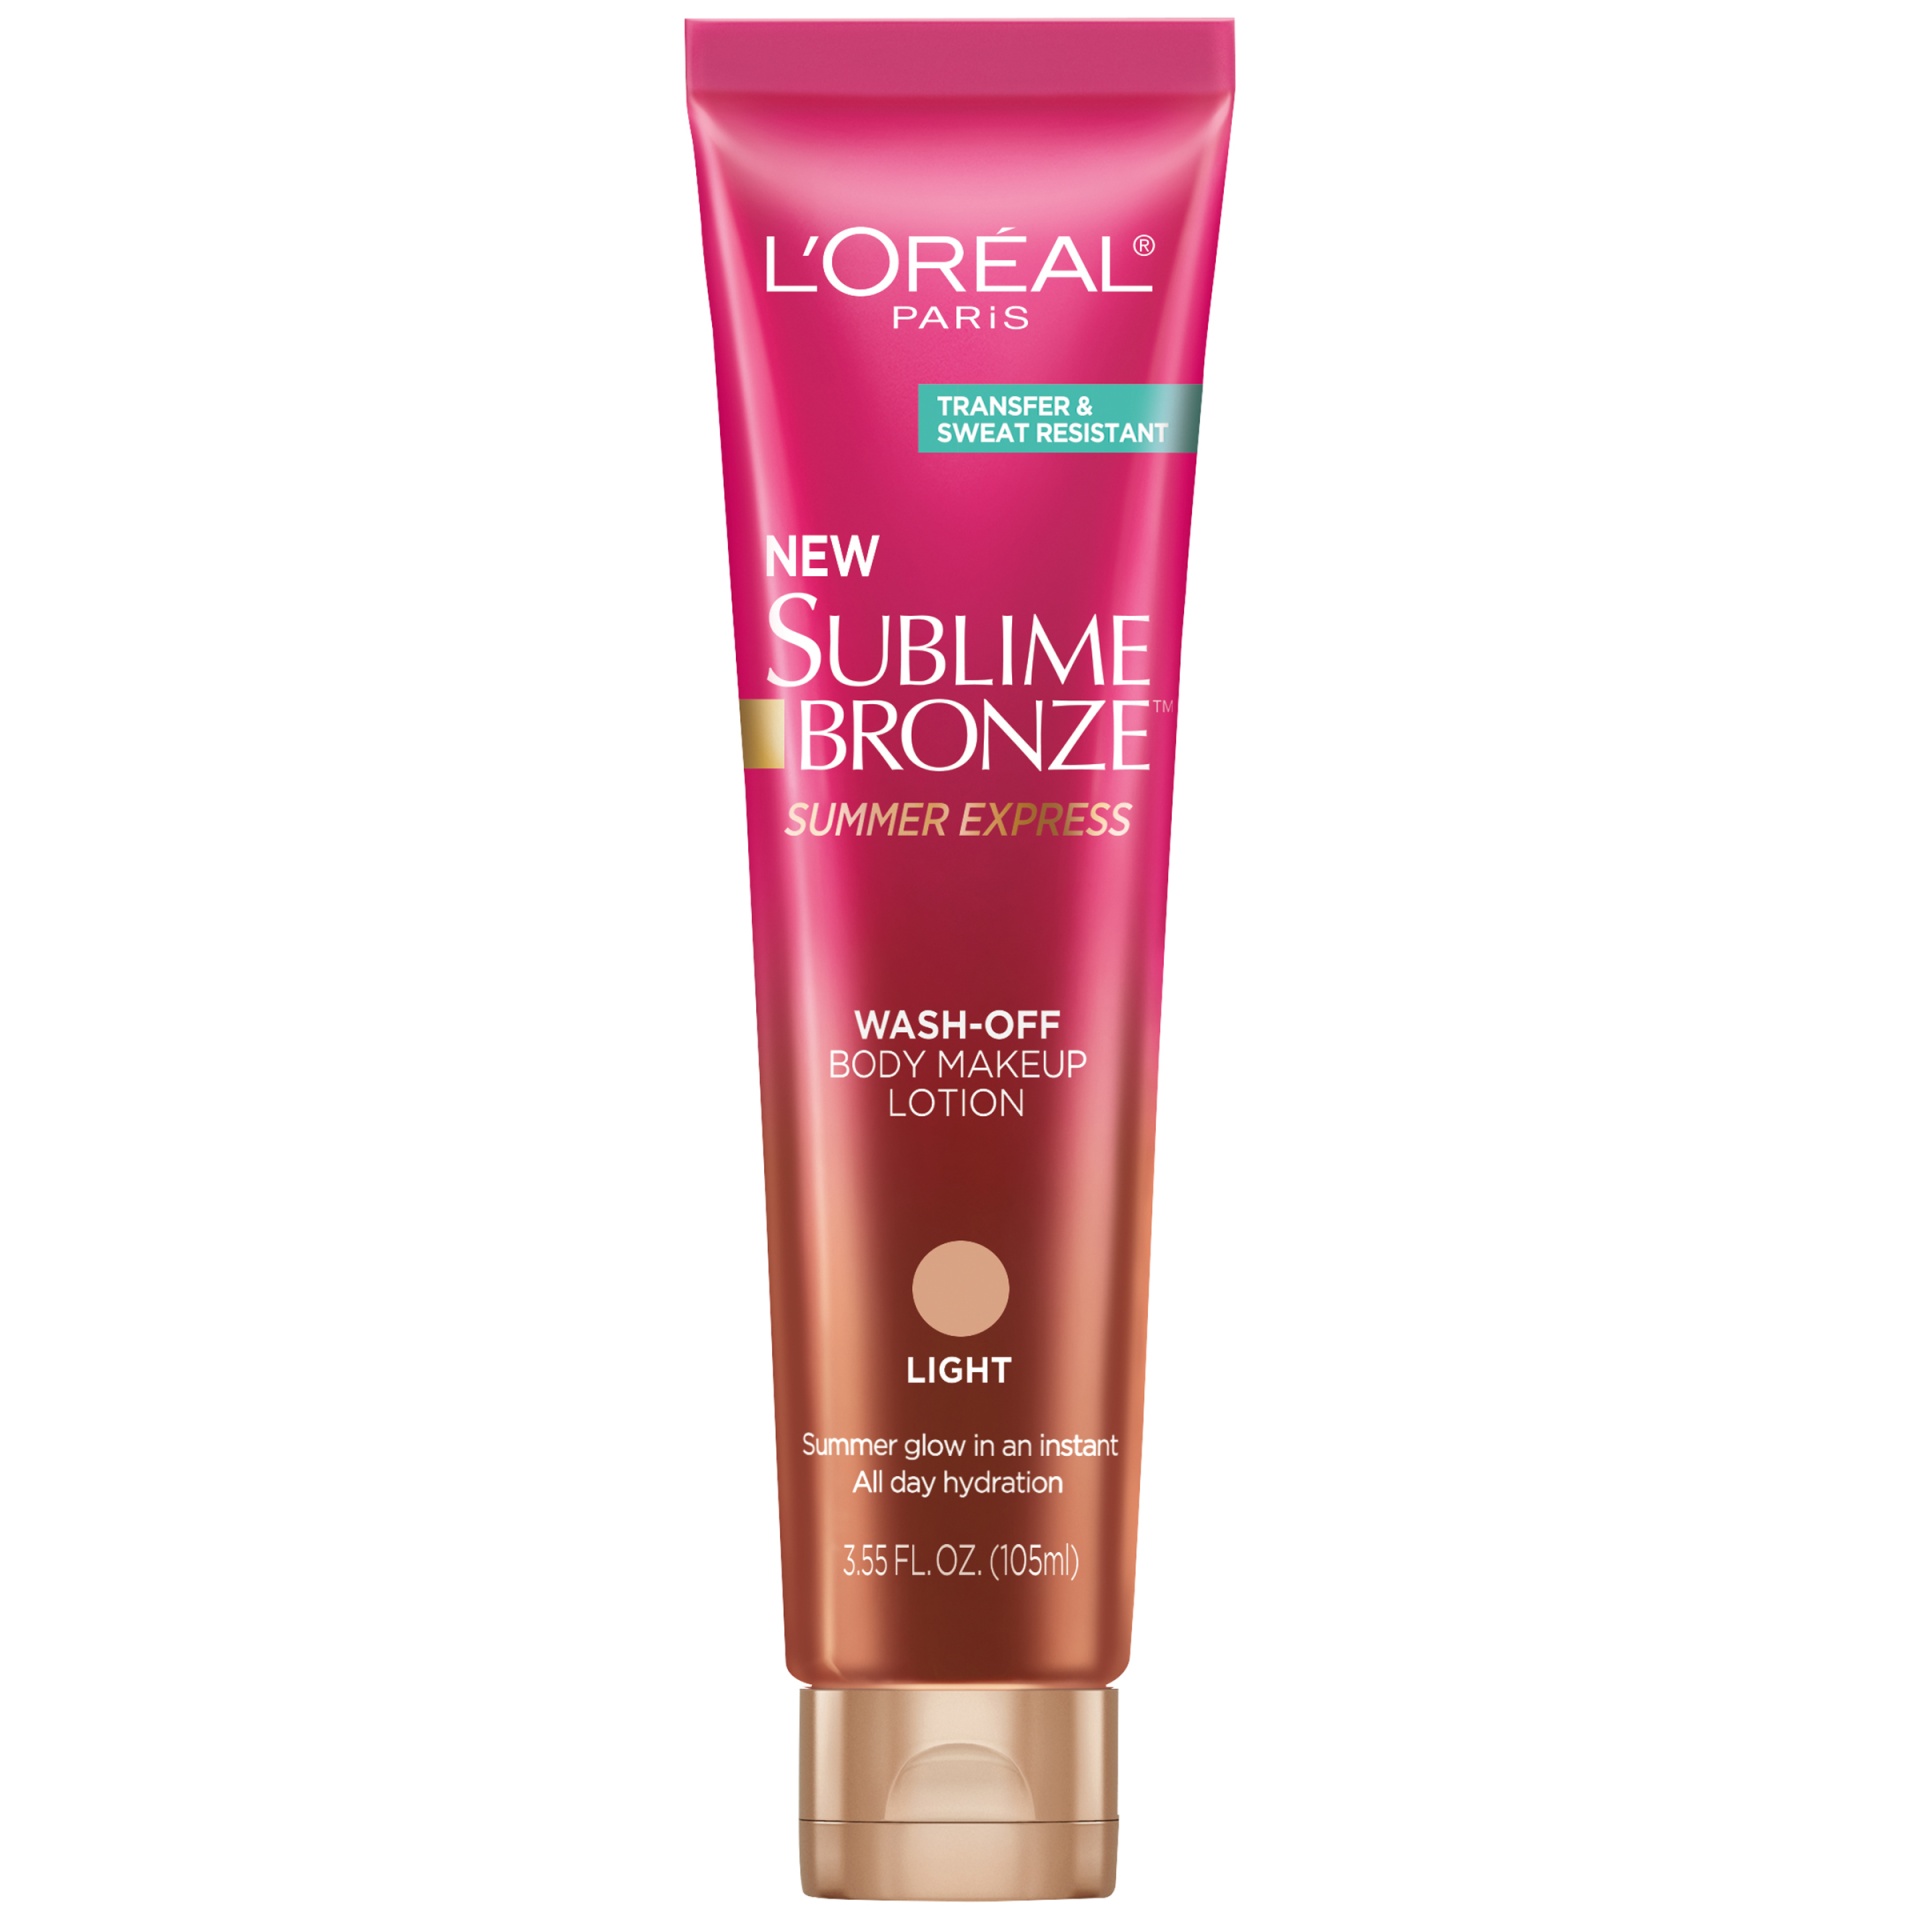 slide 1 of 1, L'Oréal Sublime Bronze Summer Express Wash-Off Body Makeup Lotion Light, 3.55 fl oz